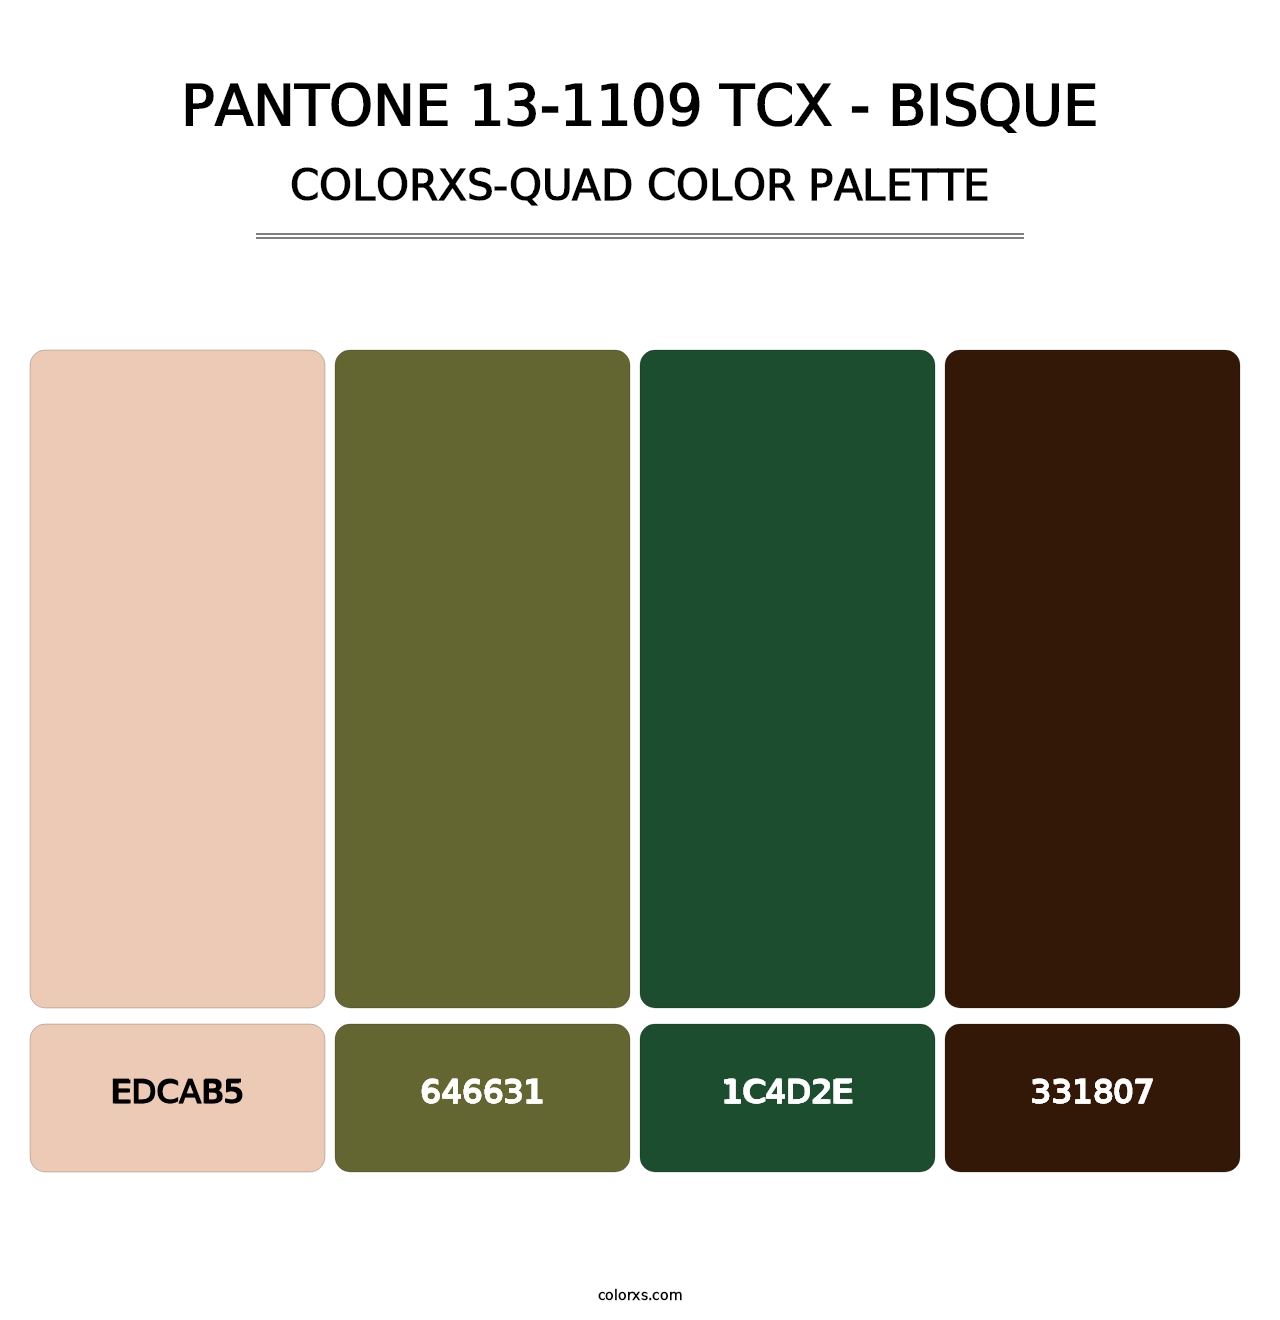 PANTONE 13-1109 TCX - Bisque - Colorxs Quad Palette